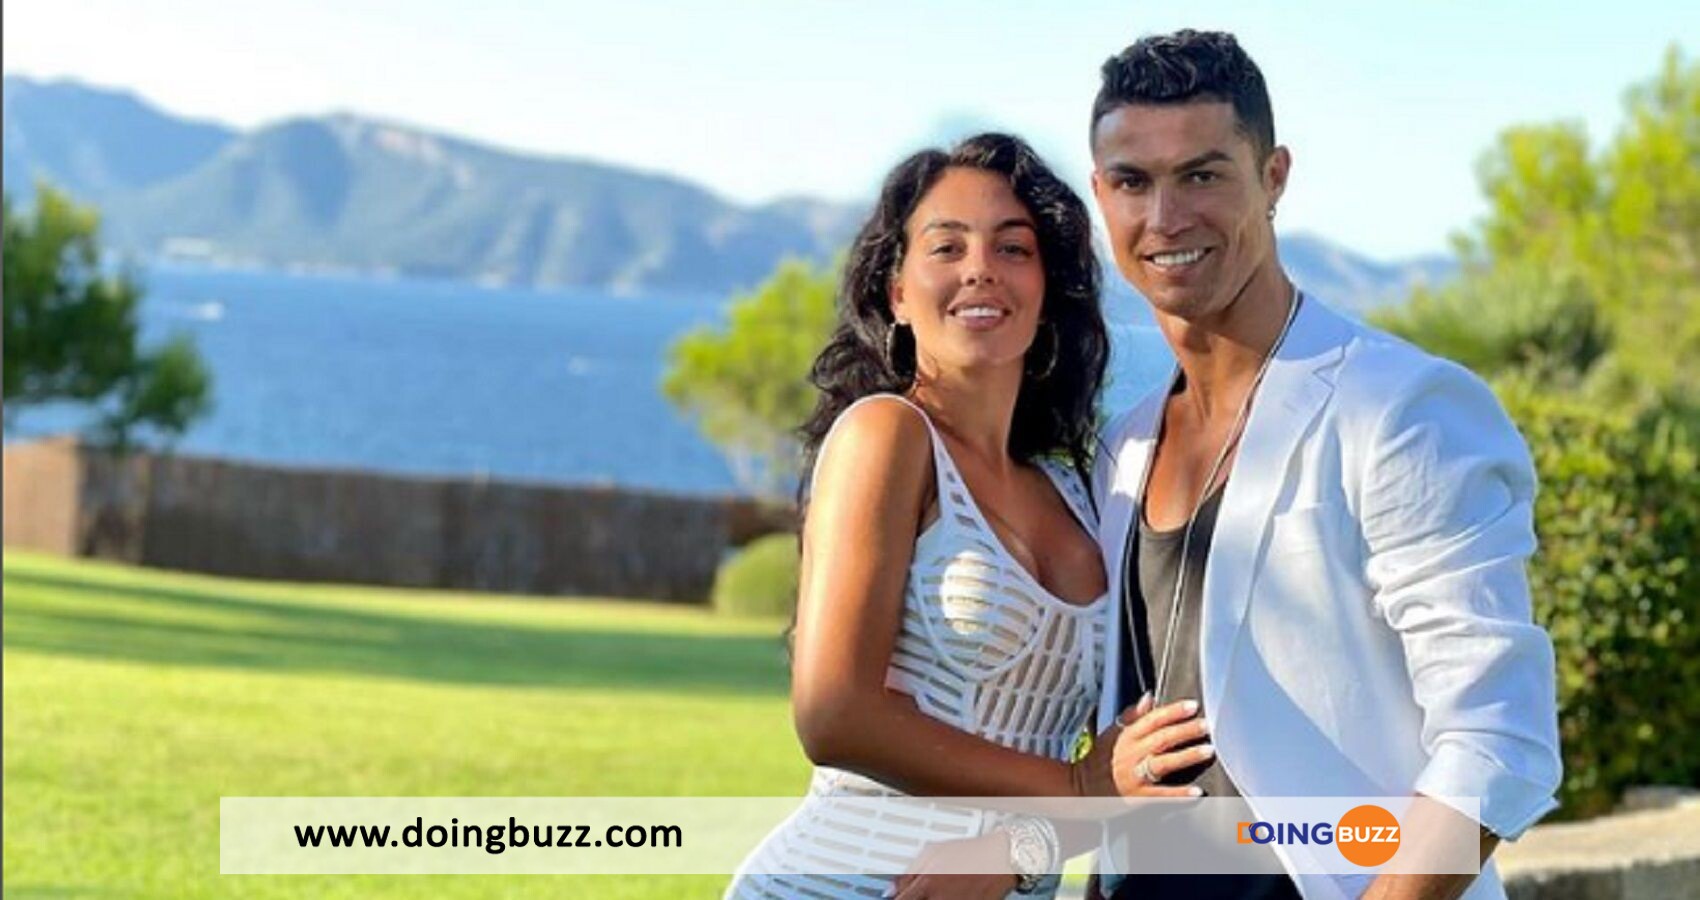 9 faits peu connus sur la relation entre Cristiano Ronaldo - "Mon âme sœur", la touchante déclaration de Cristiano Ronaldo à Georgina Rodriguez